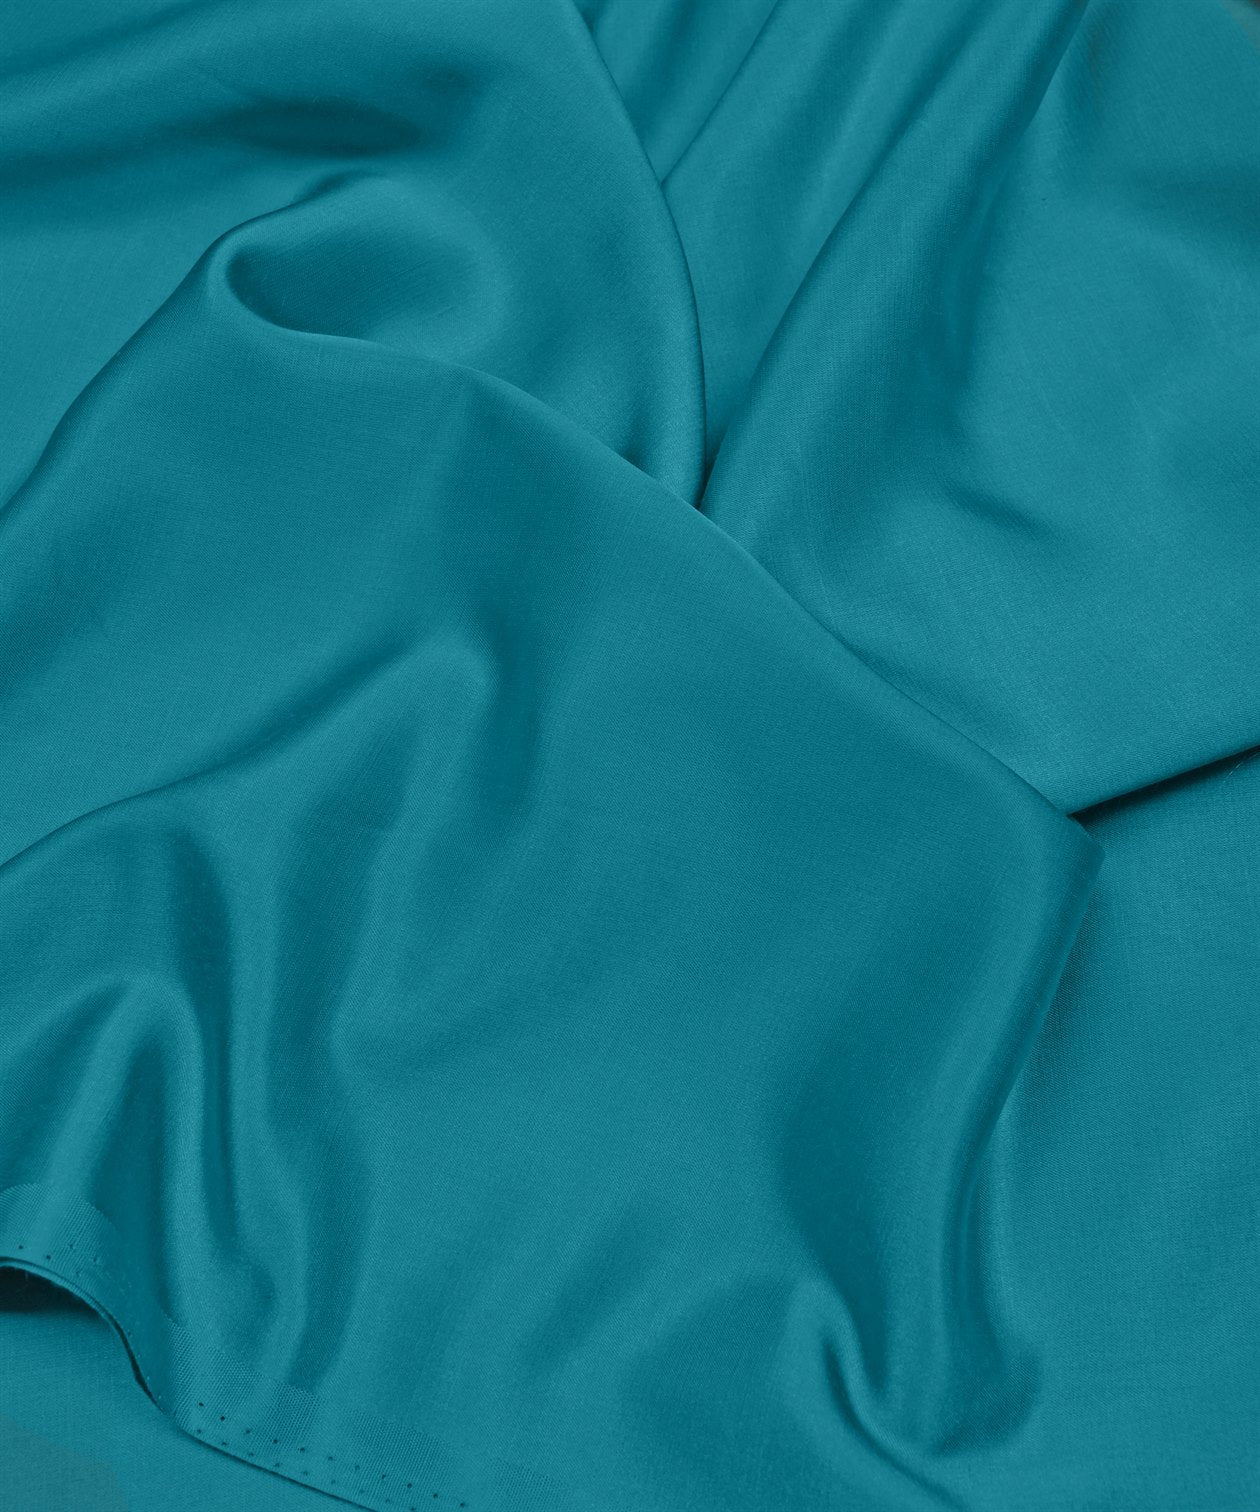 Light Teal Blue Plain Dyed Modal Satin Fabric